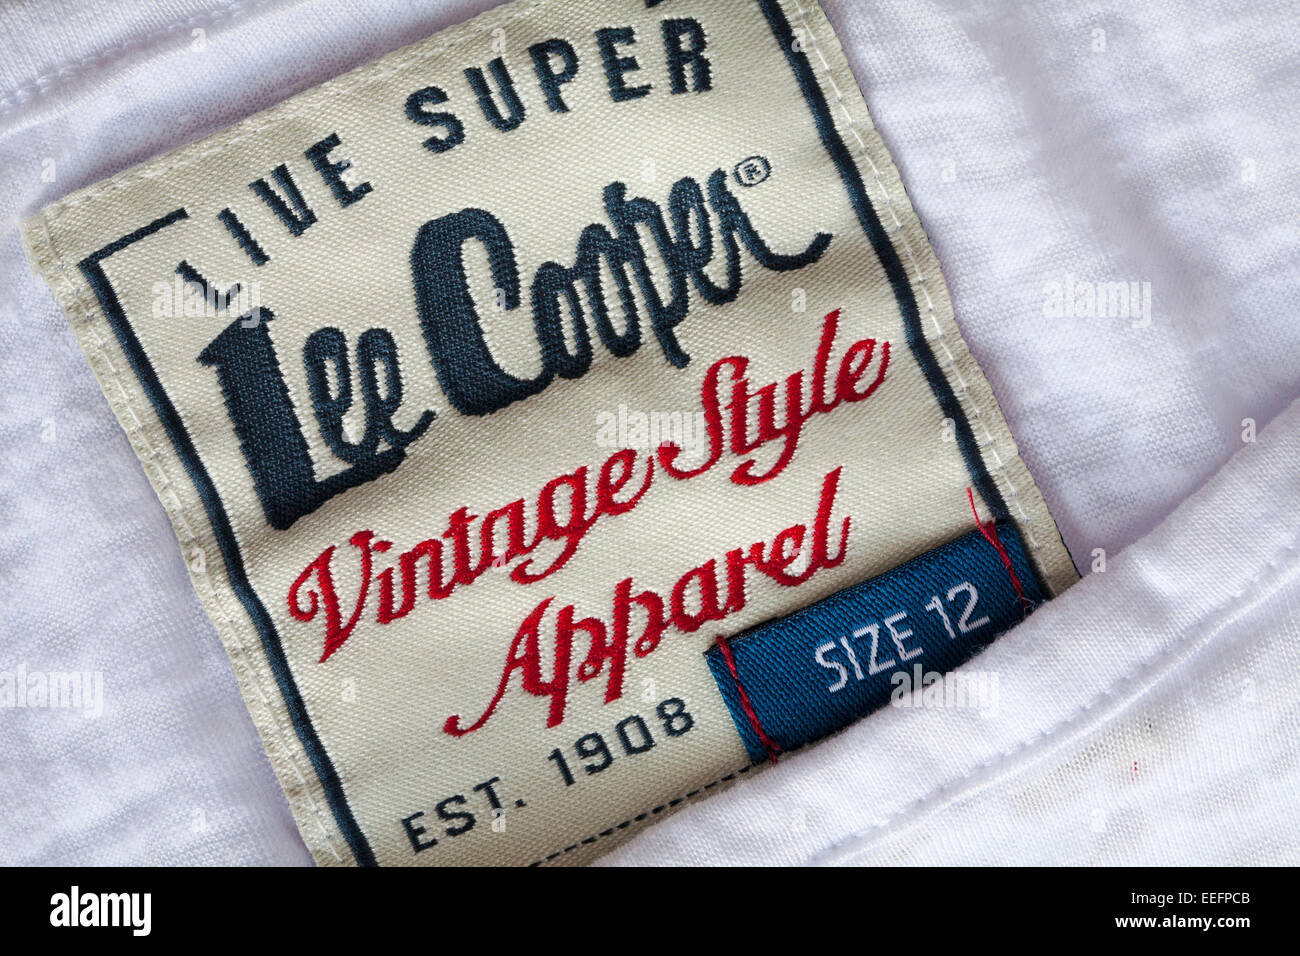 Super Live Lee Cooper vêtements style Vintage label 1908 est en taille 12  jeans blanc femme Photo Stock - Alamy